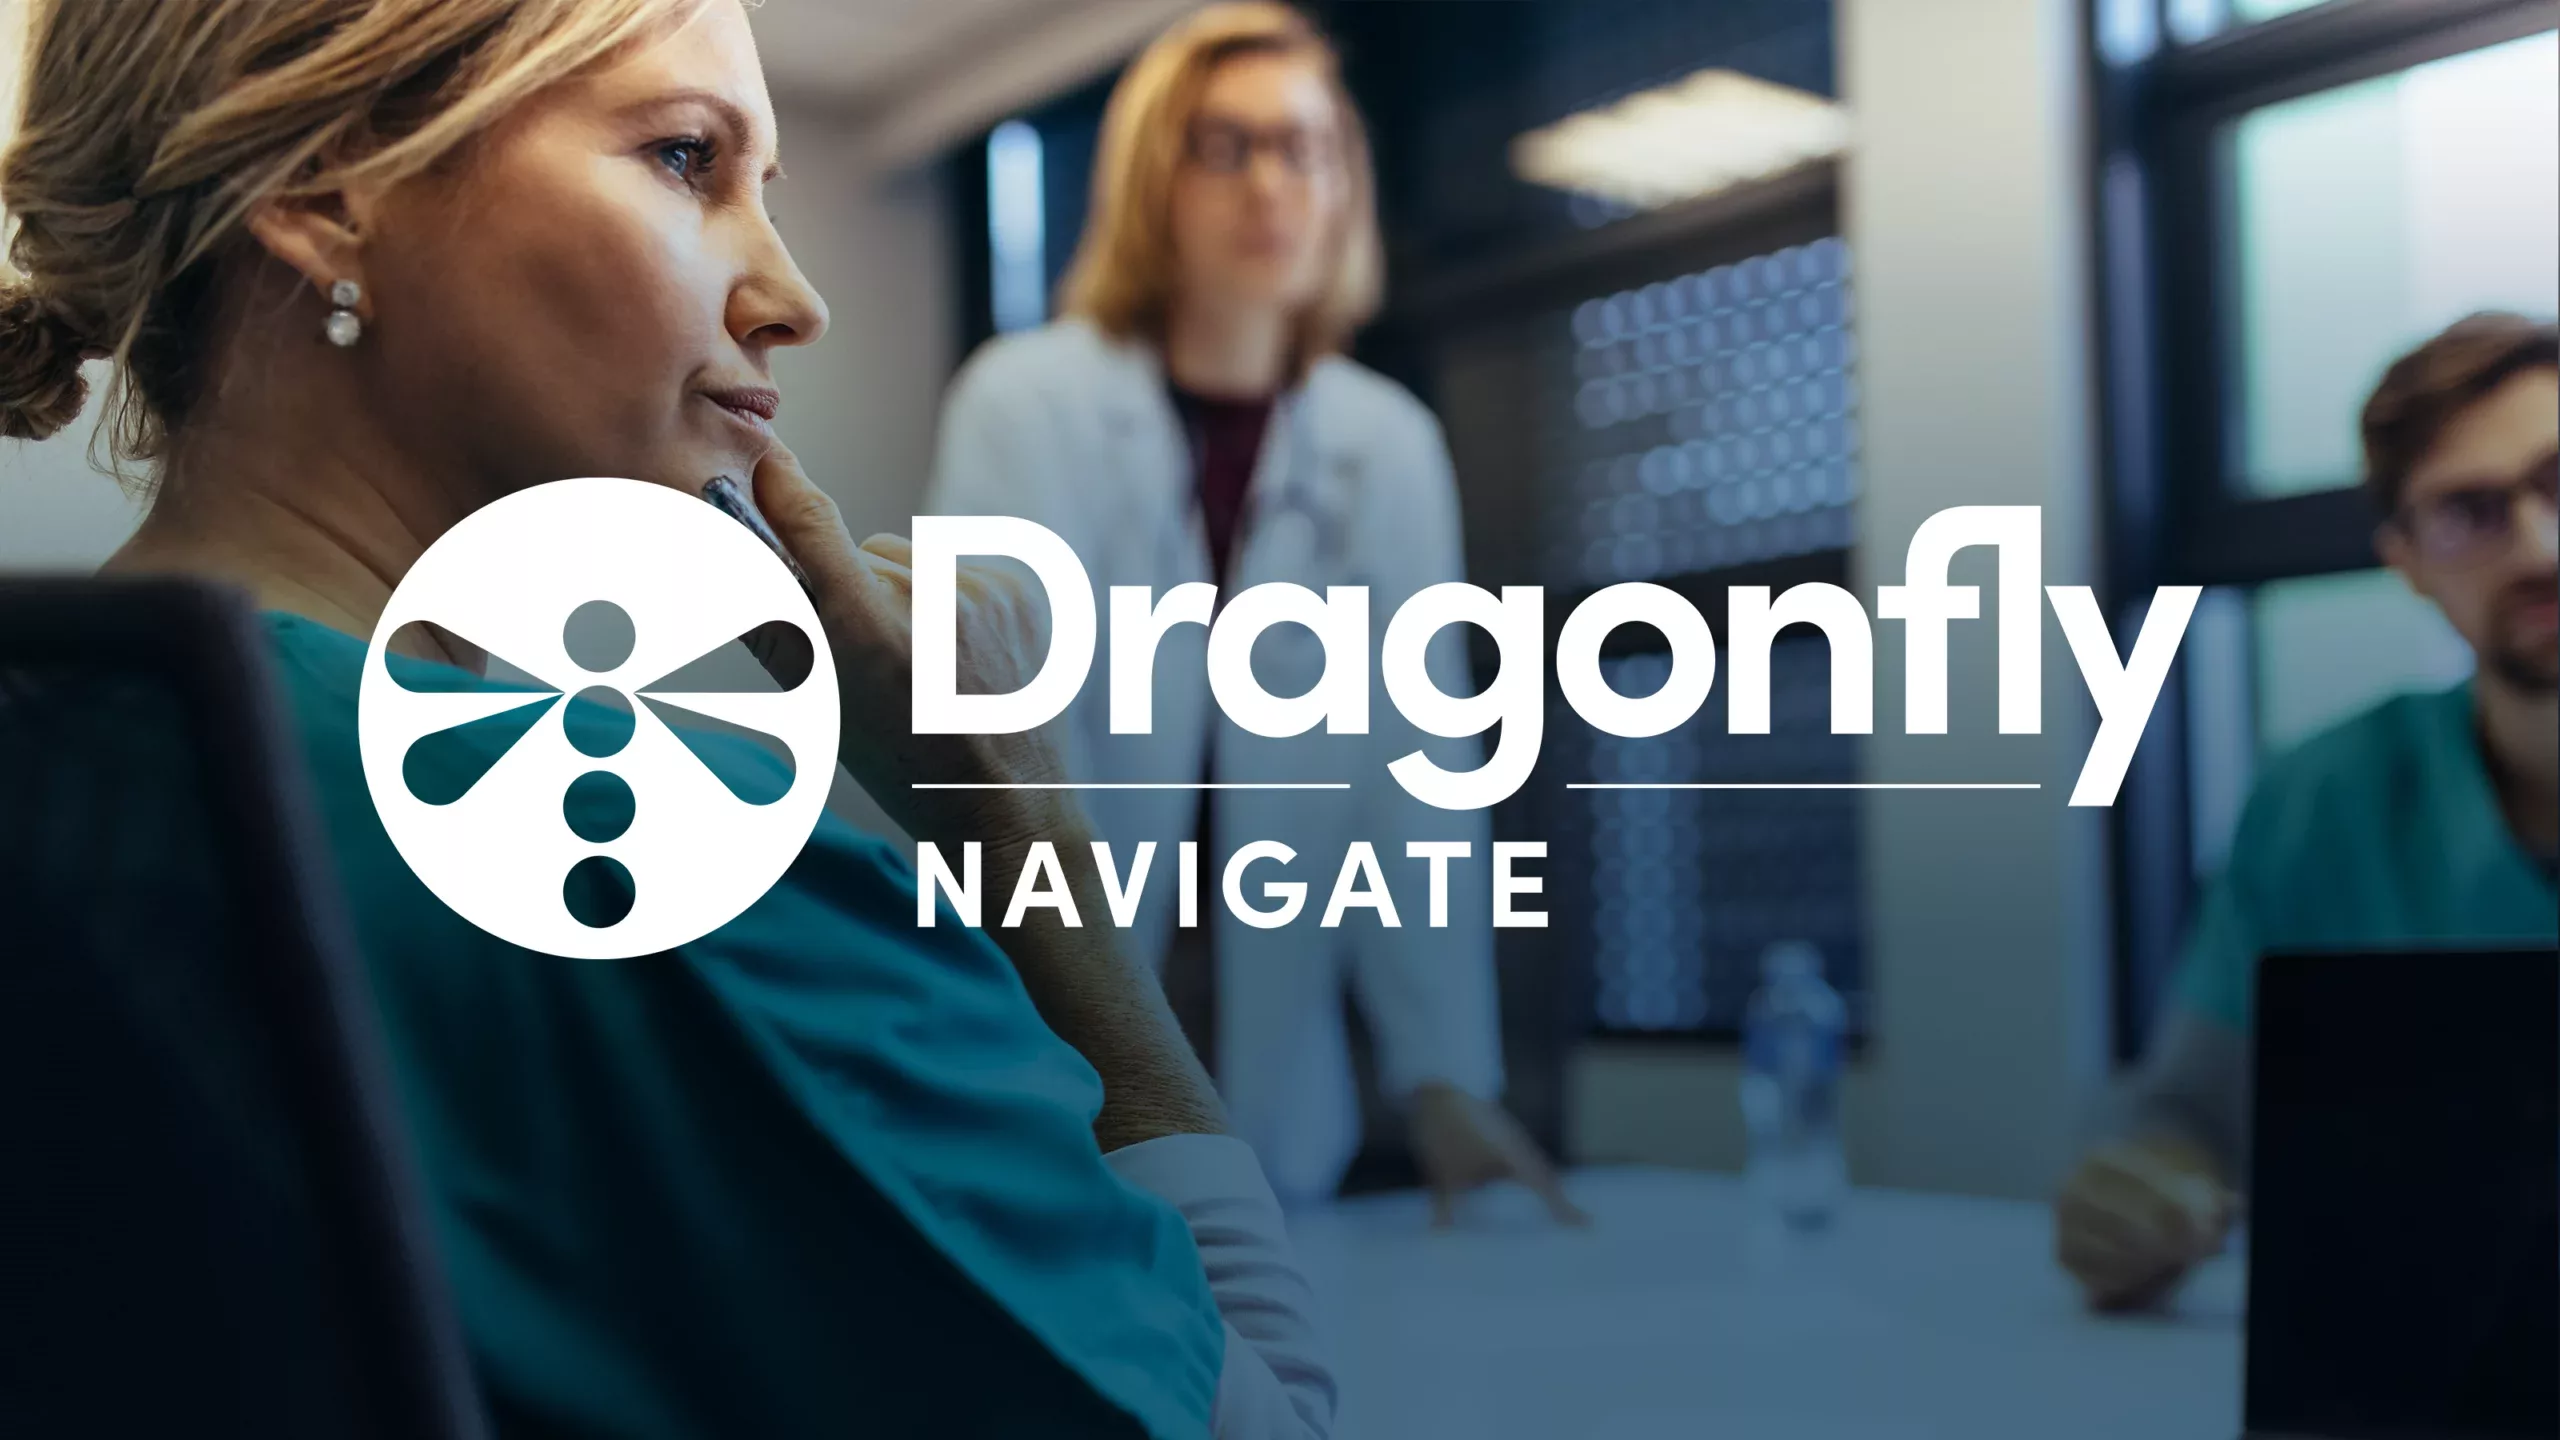 Dragonfly Navigate Logo over Case Manager